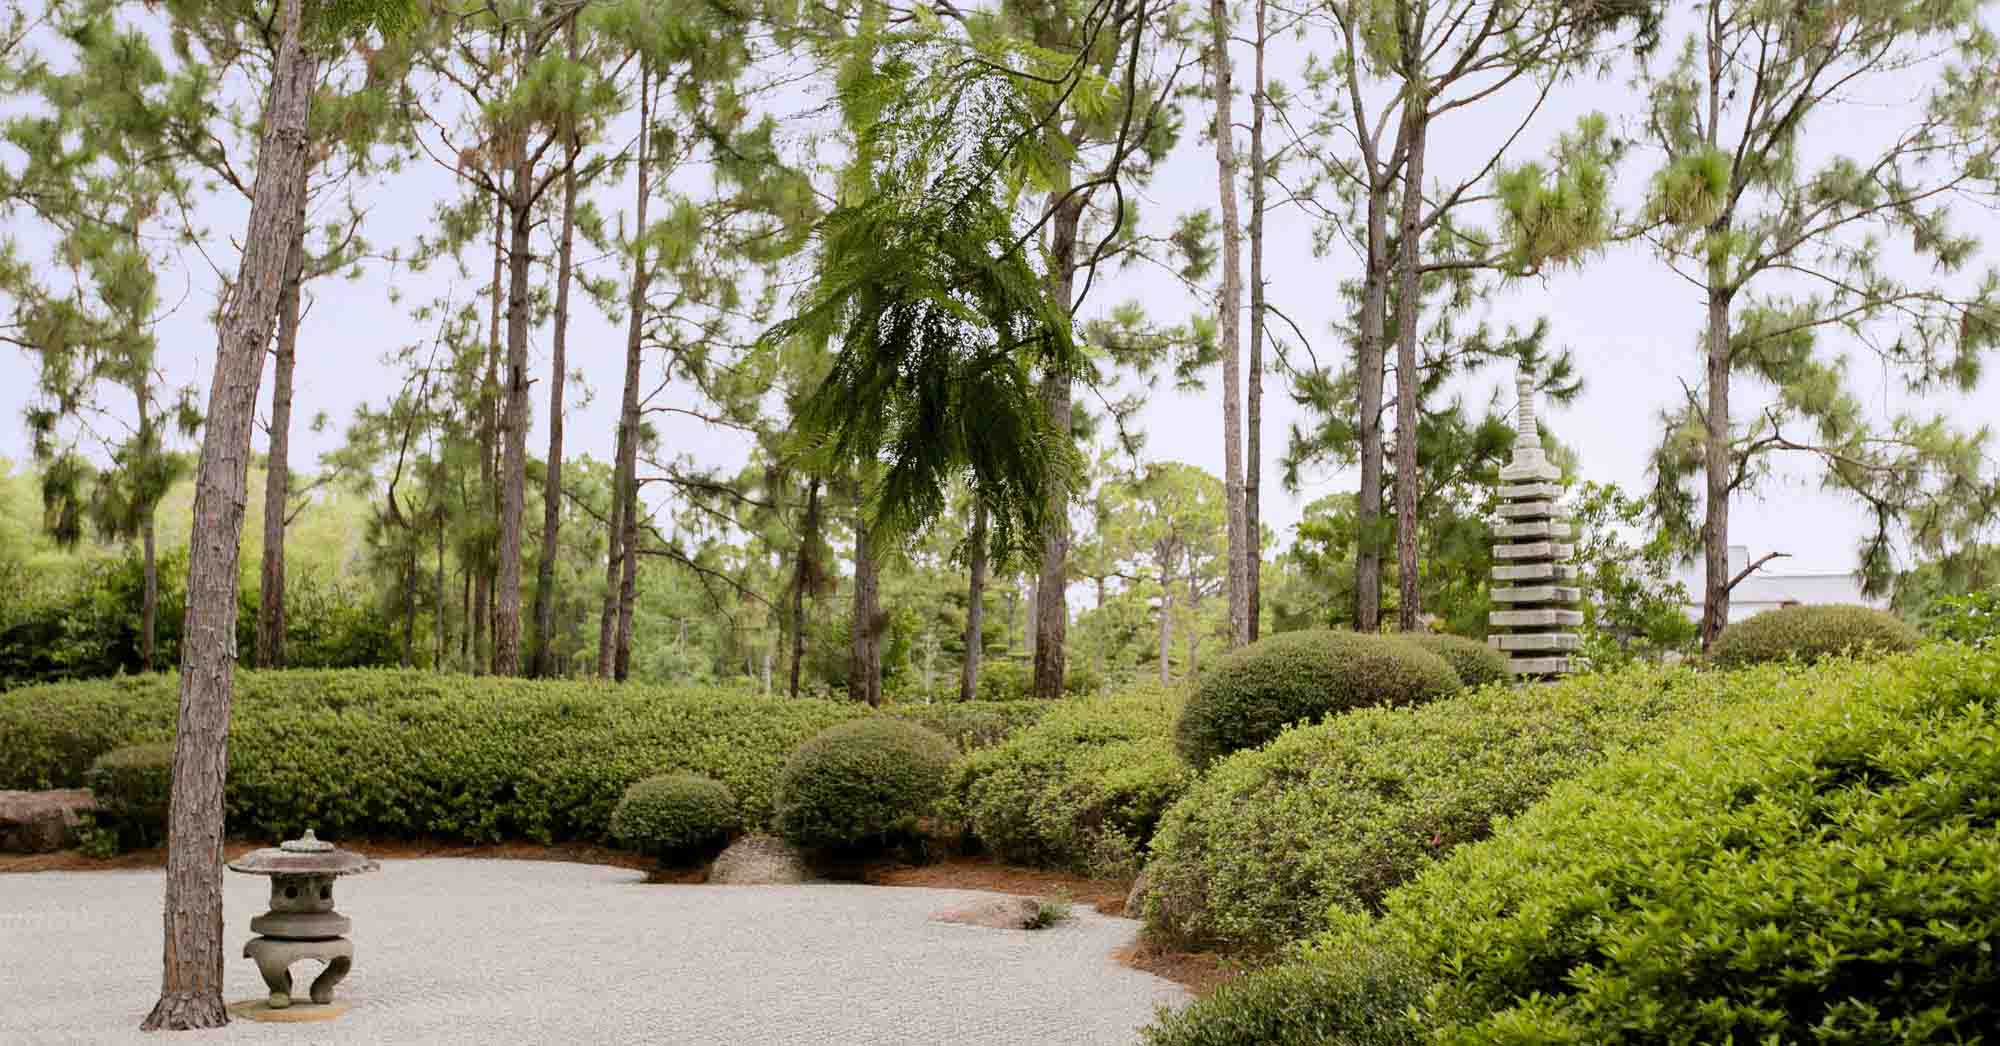 Visitar o Morikami Museum and Japanese Gardens é como estar no Japão sem precisar viajar (Foto: morikami.org)